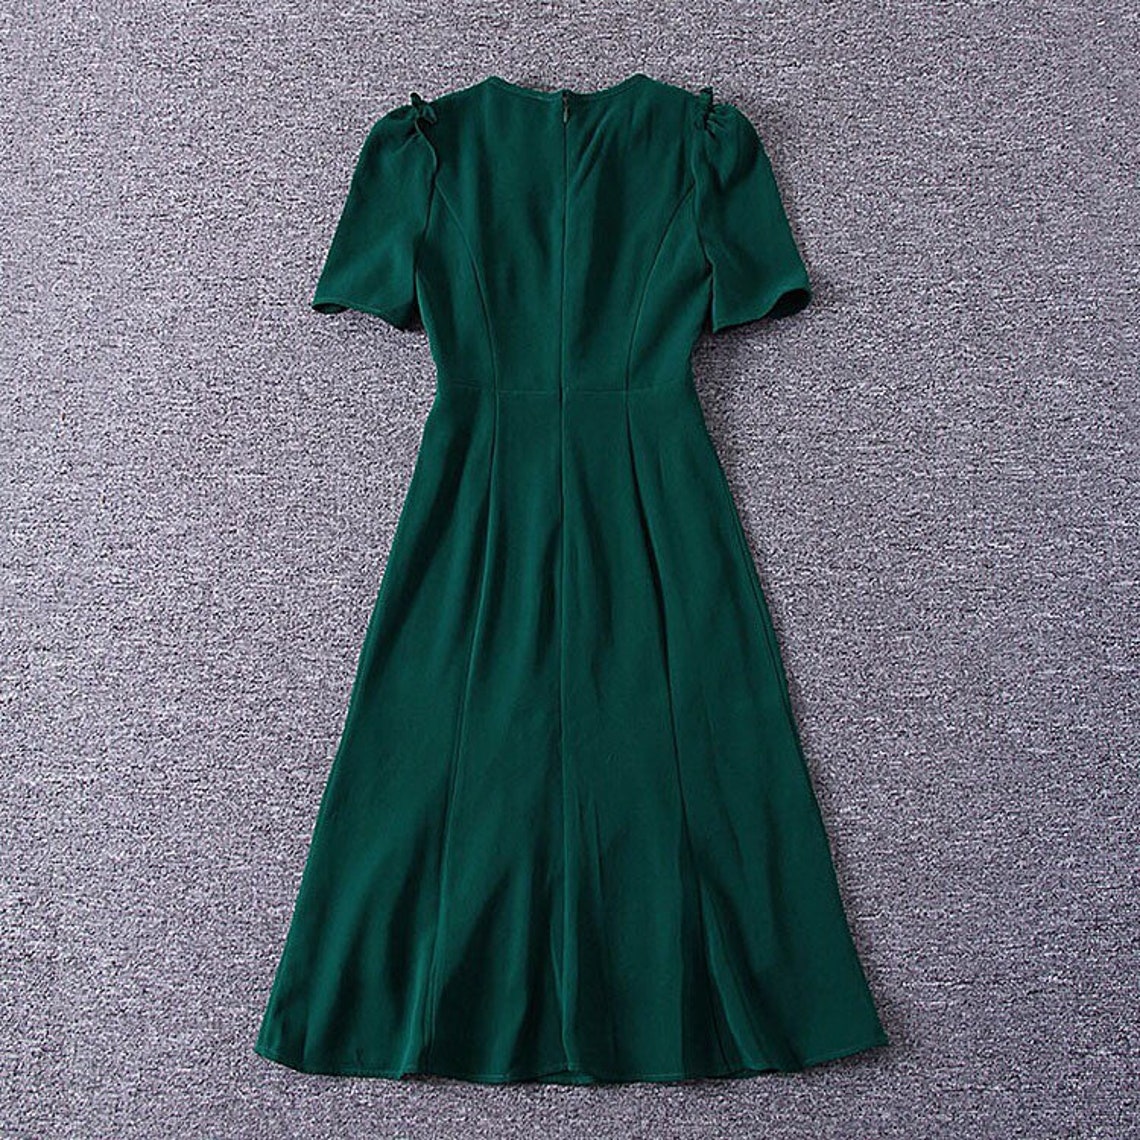 Kate Middleton Mermaid Green Dress - Etsy